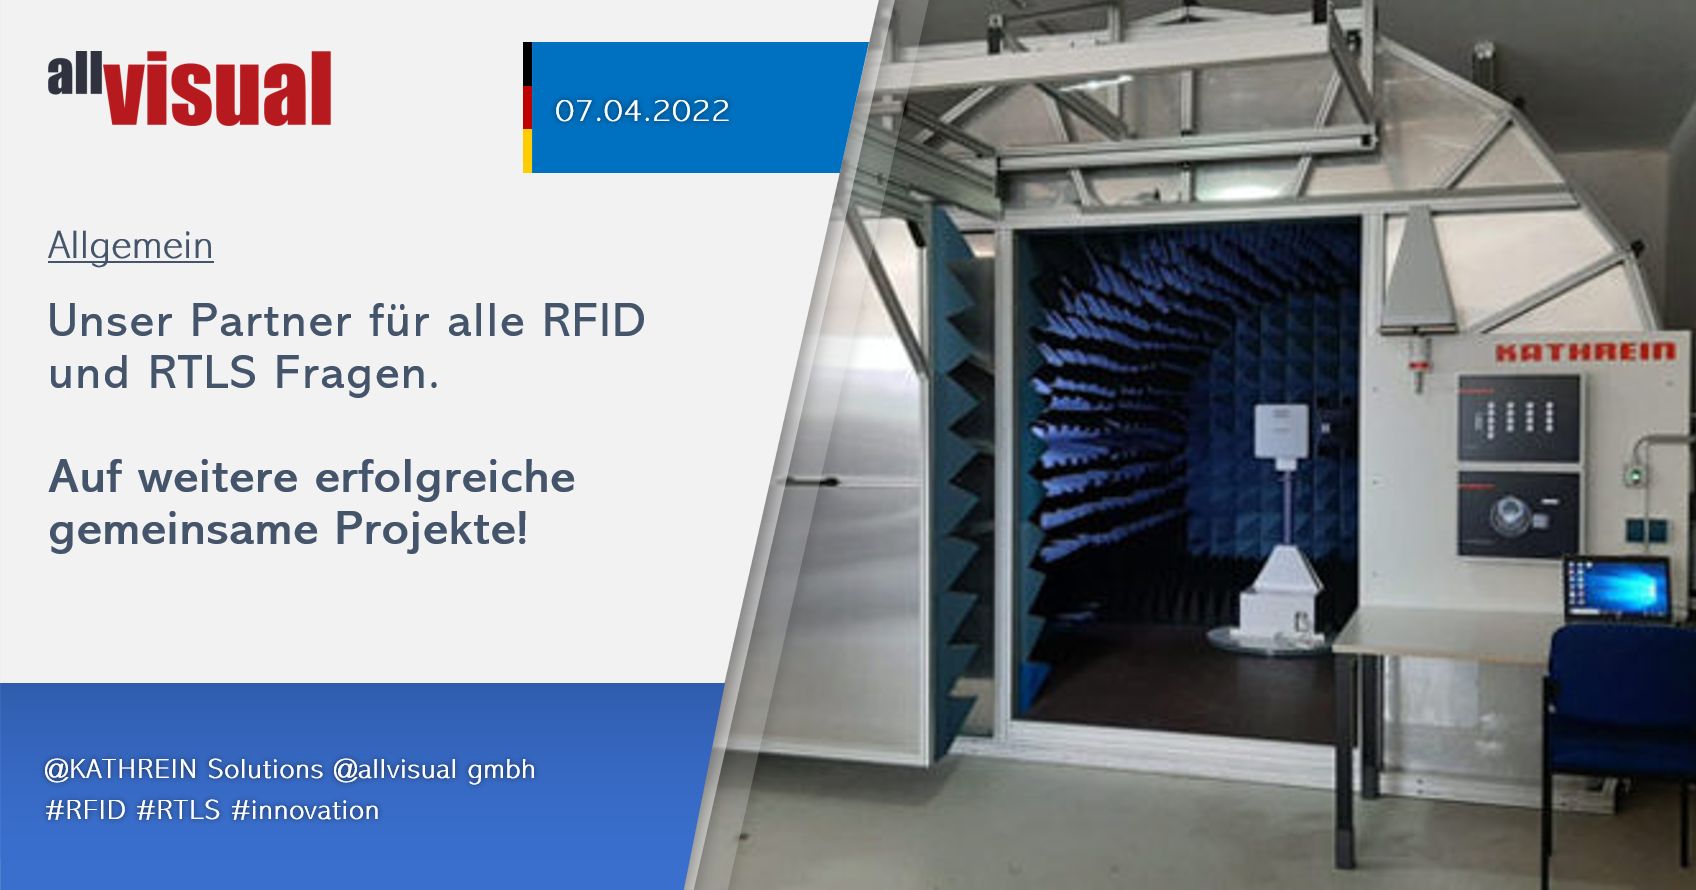 Unser Partner für alle RFID und RTLS Fragen: KATHREIN Solutions - 07.04.2022